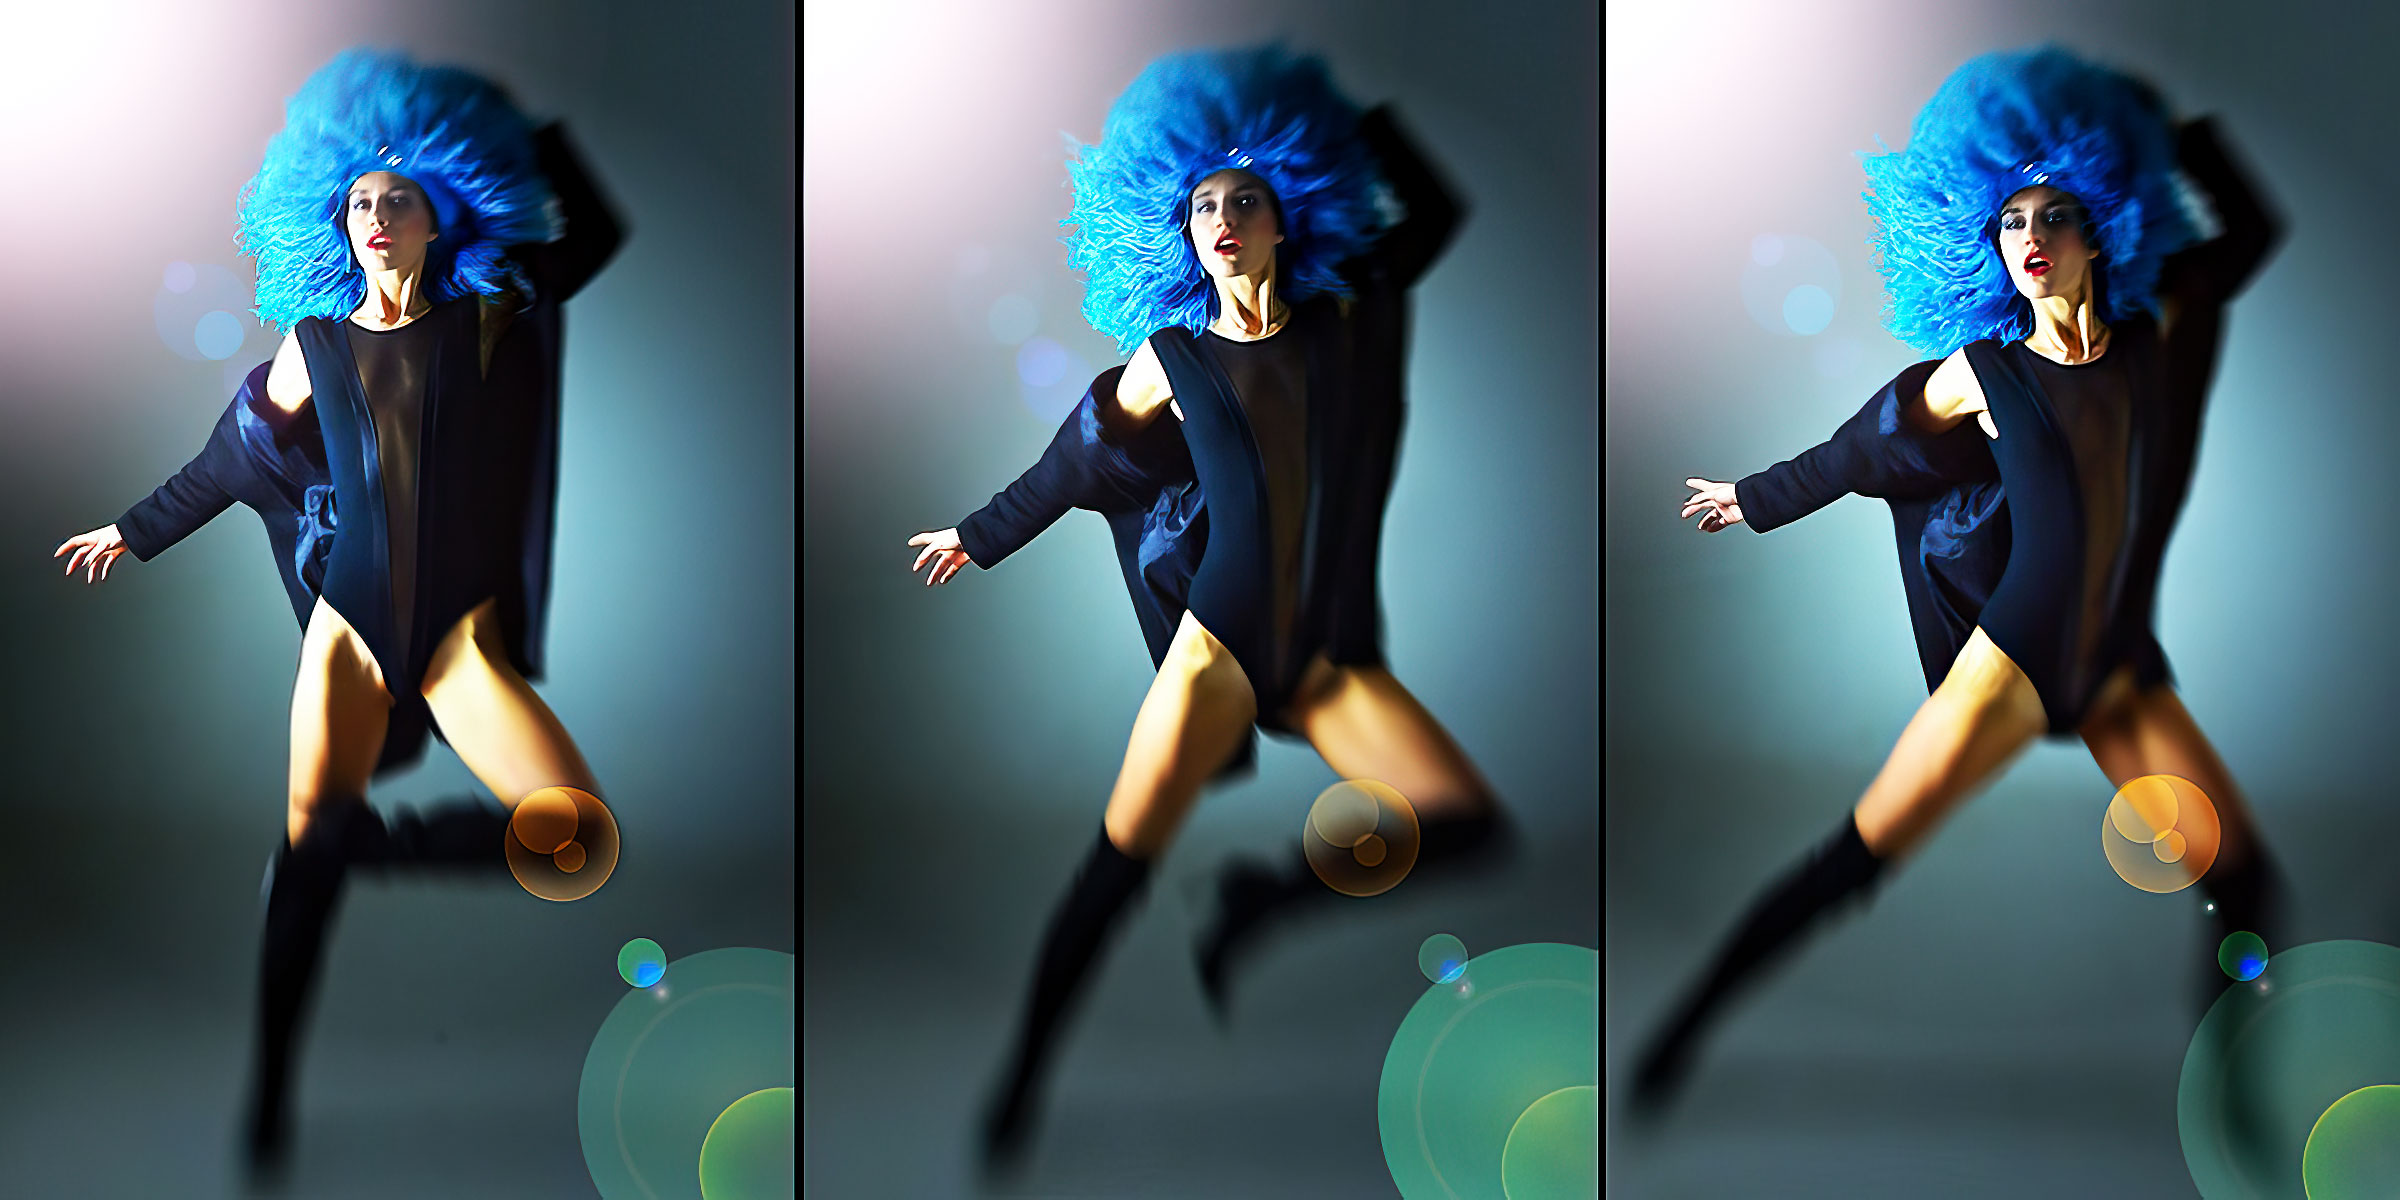 fashion-fotografie-stuttgart-michael-diehl-photography-redaktionell-model-perücke-blau